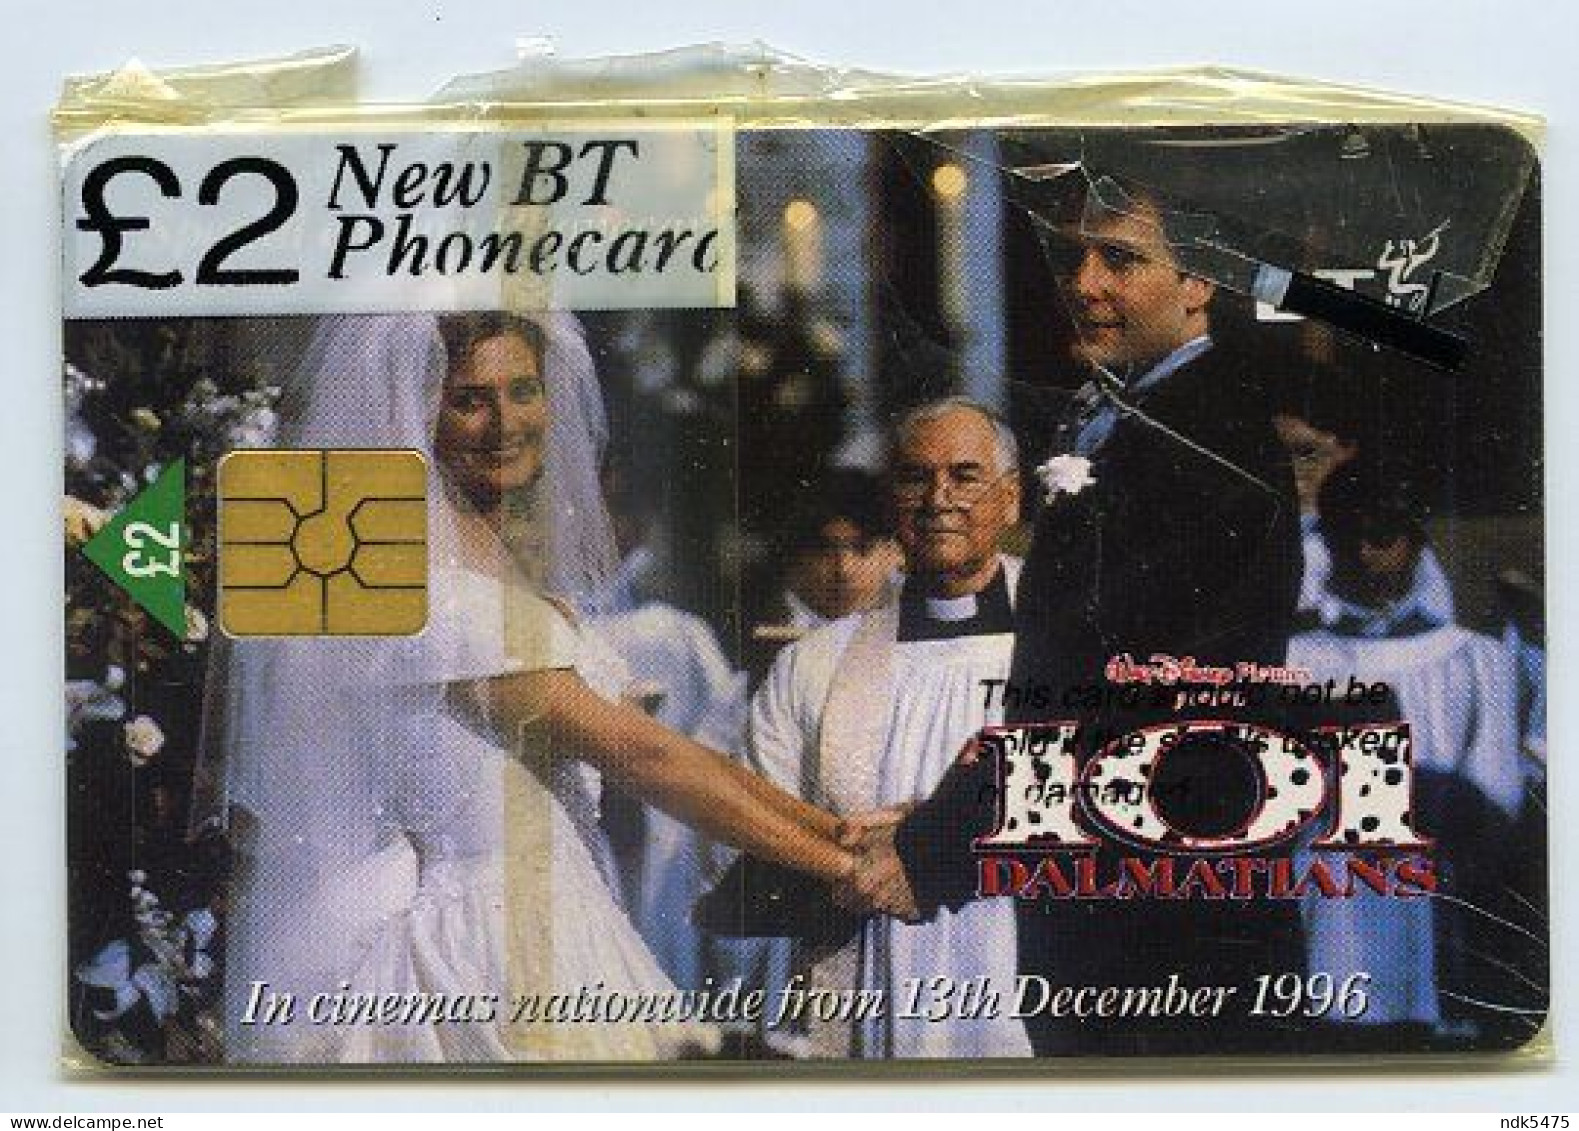 BT PHONECARD : 101 DALMATIONS - 1996 FILM : £2 / JOELY RICHARDSON, JEFF DANIELS - BT Promotionnelles